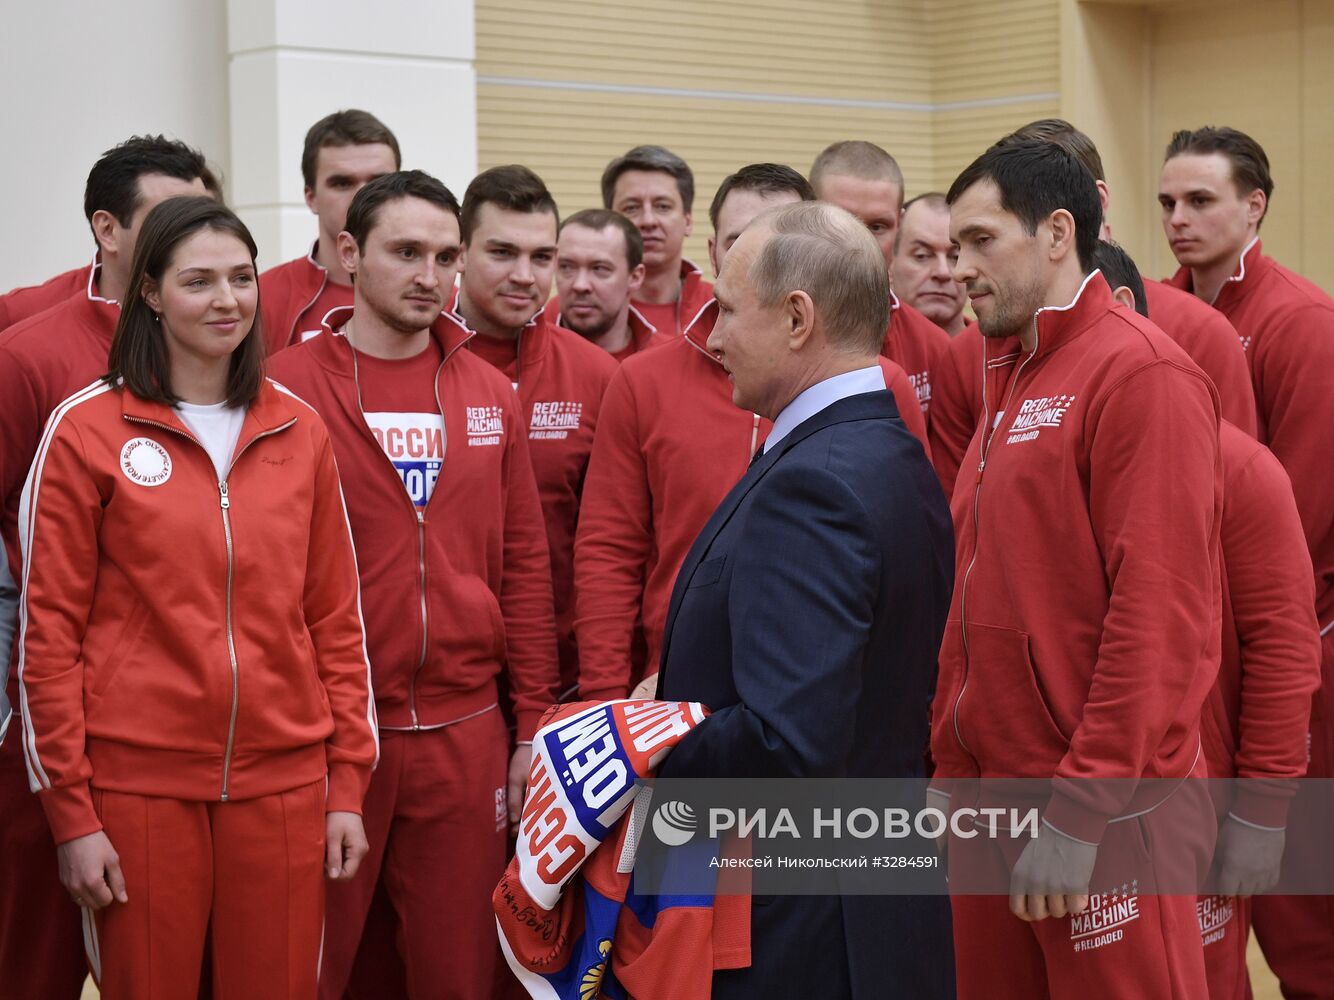 Президент РФ В. Путин встретился с российскими участниками XXIII Олимпийских зимних игр 2018 года в Пхёнчхане